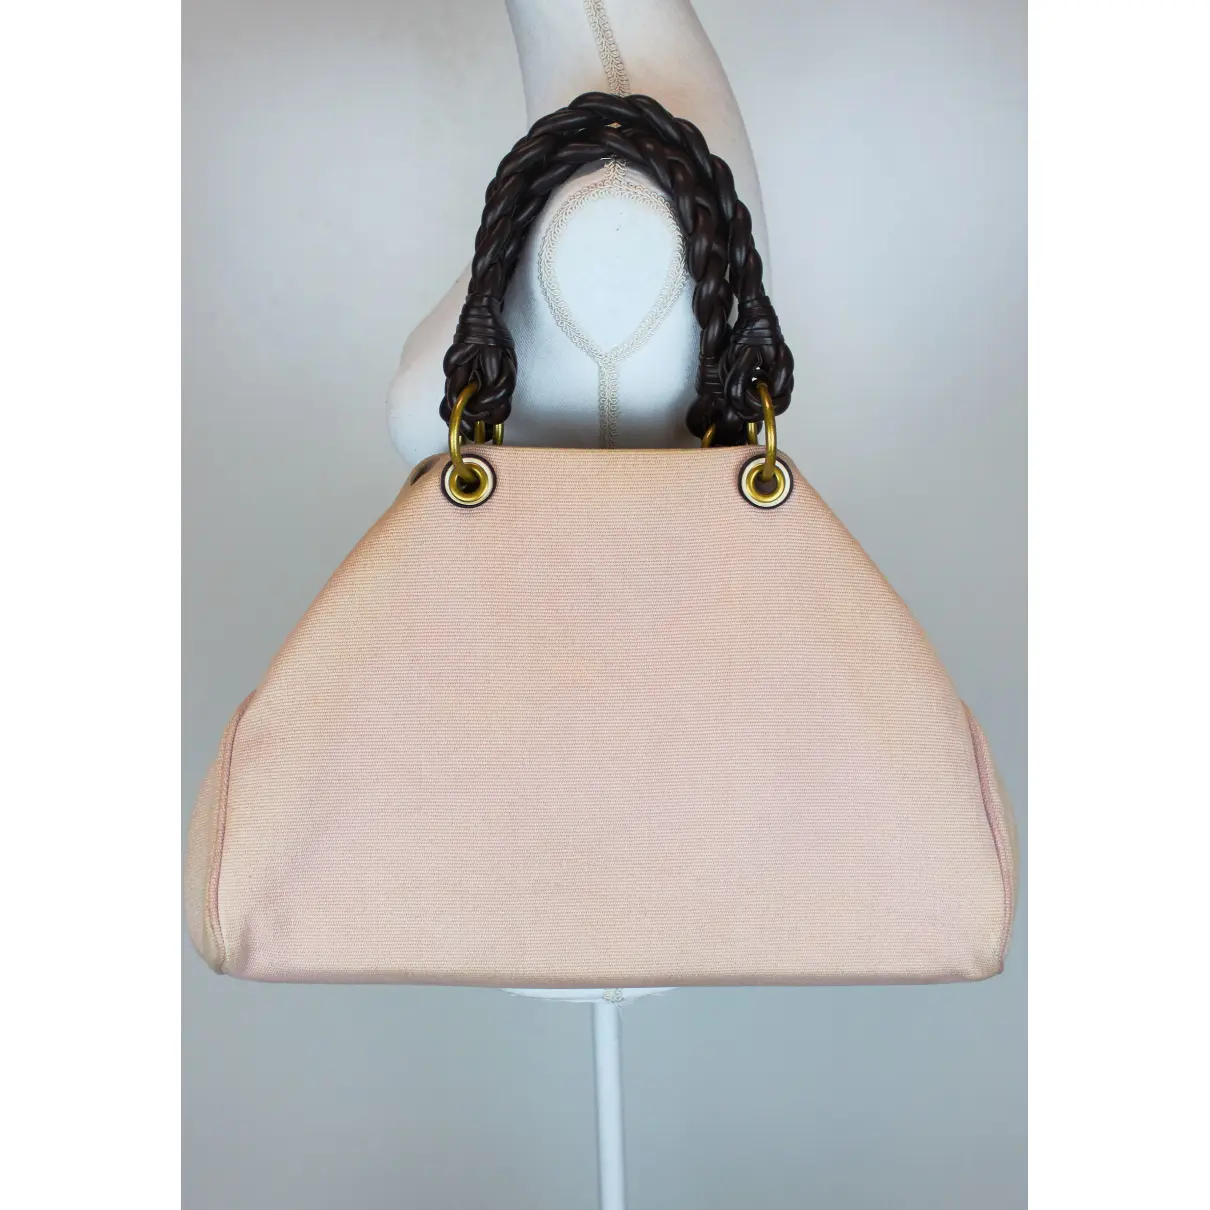 Luxury Bottega Veneta Handbags Women